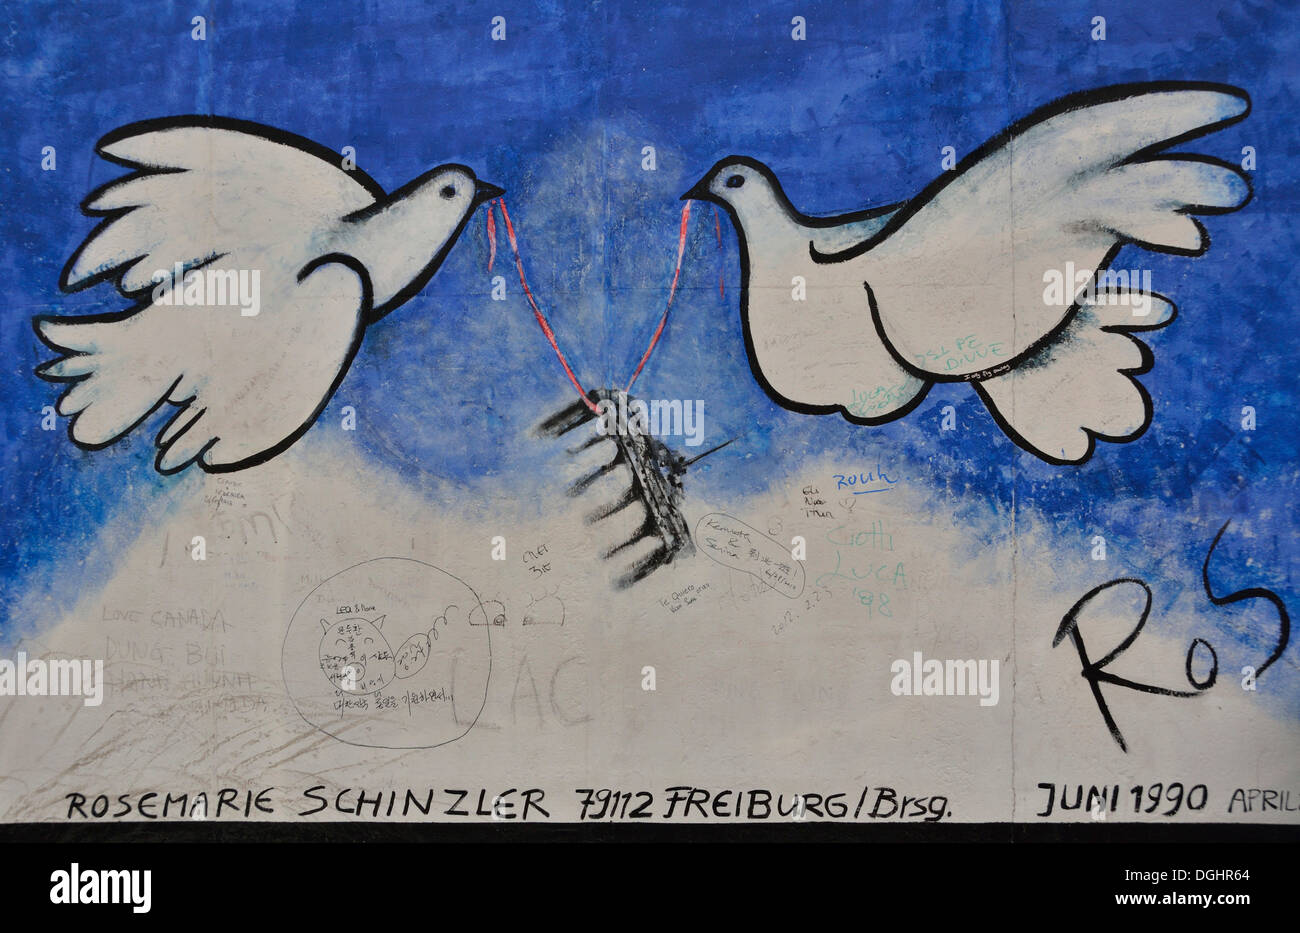 Palomas de la paz con la Puerta de Brandenburgo pintado sobre los restos del muro de Berlín, el mural por Rosemarie Schinzler, East Side Gallery Foto de stock